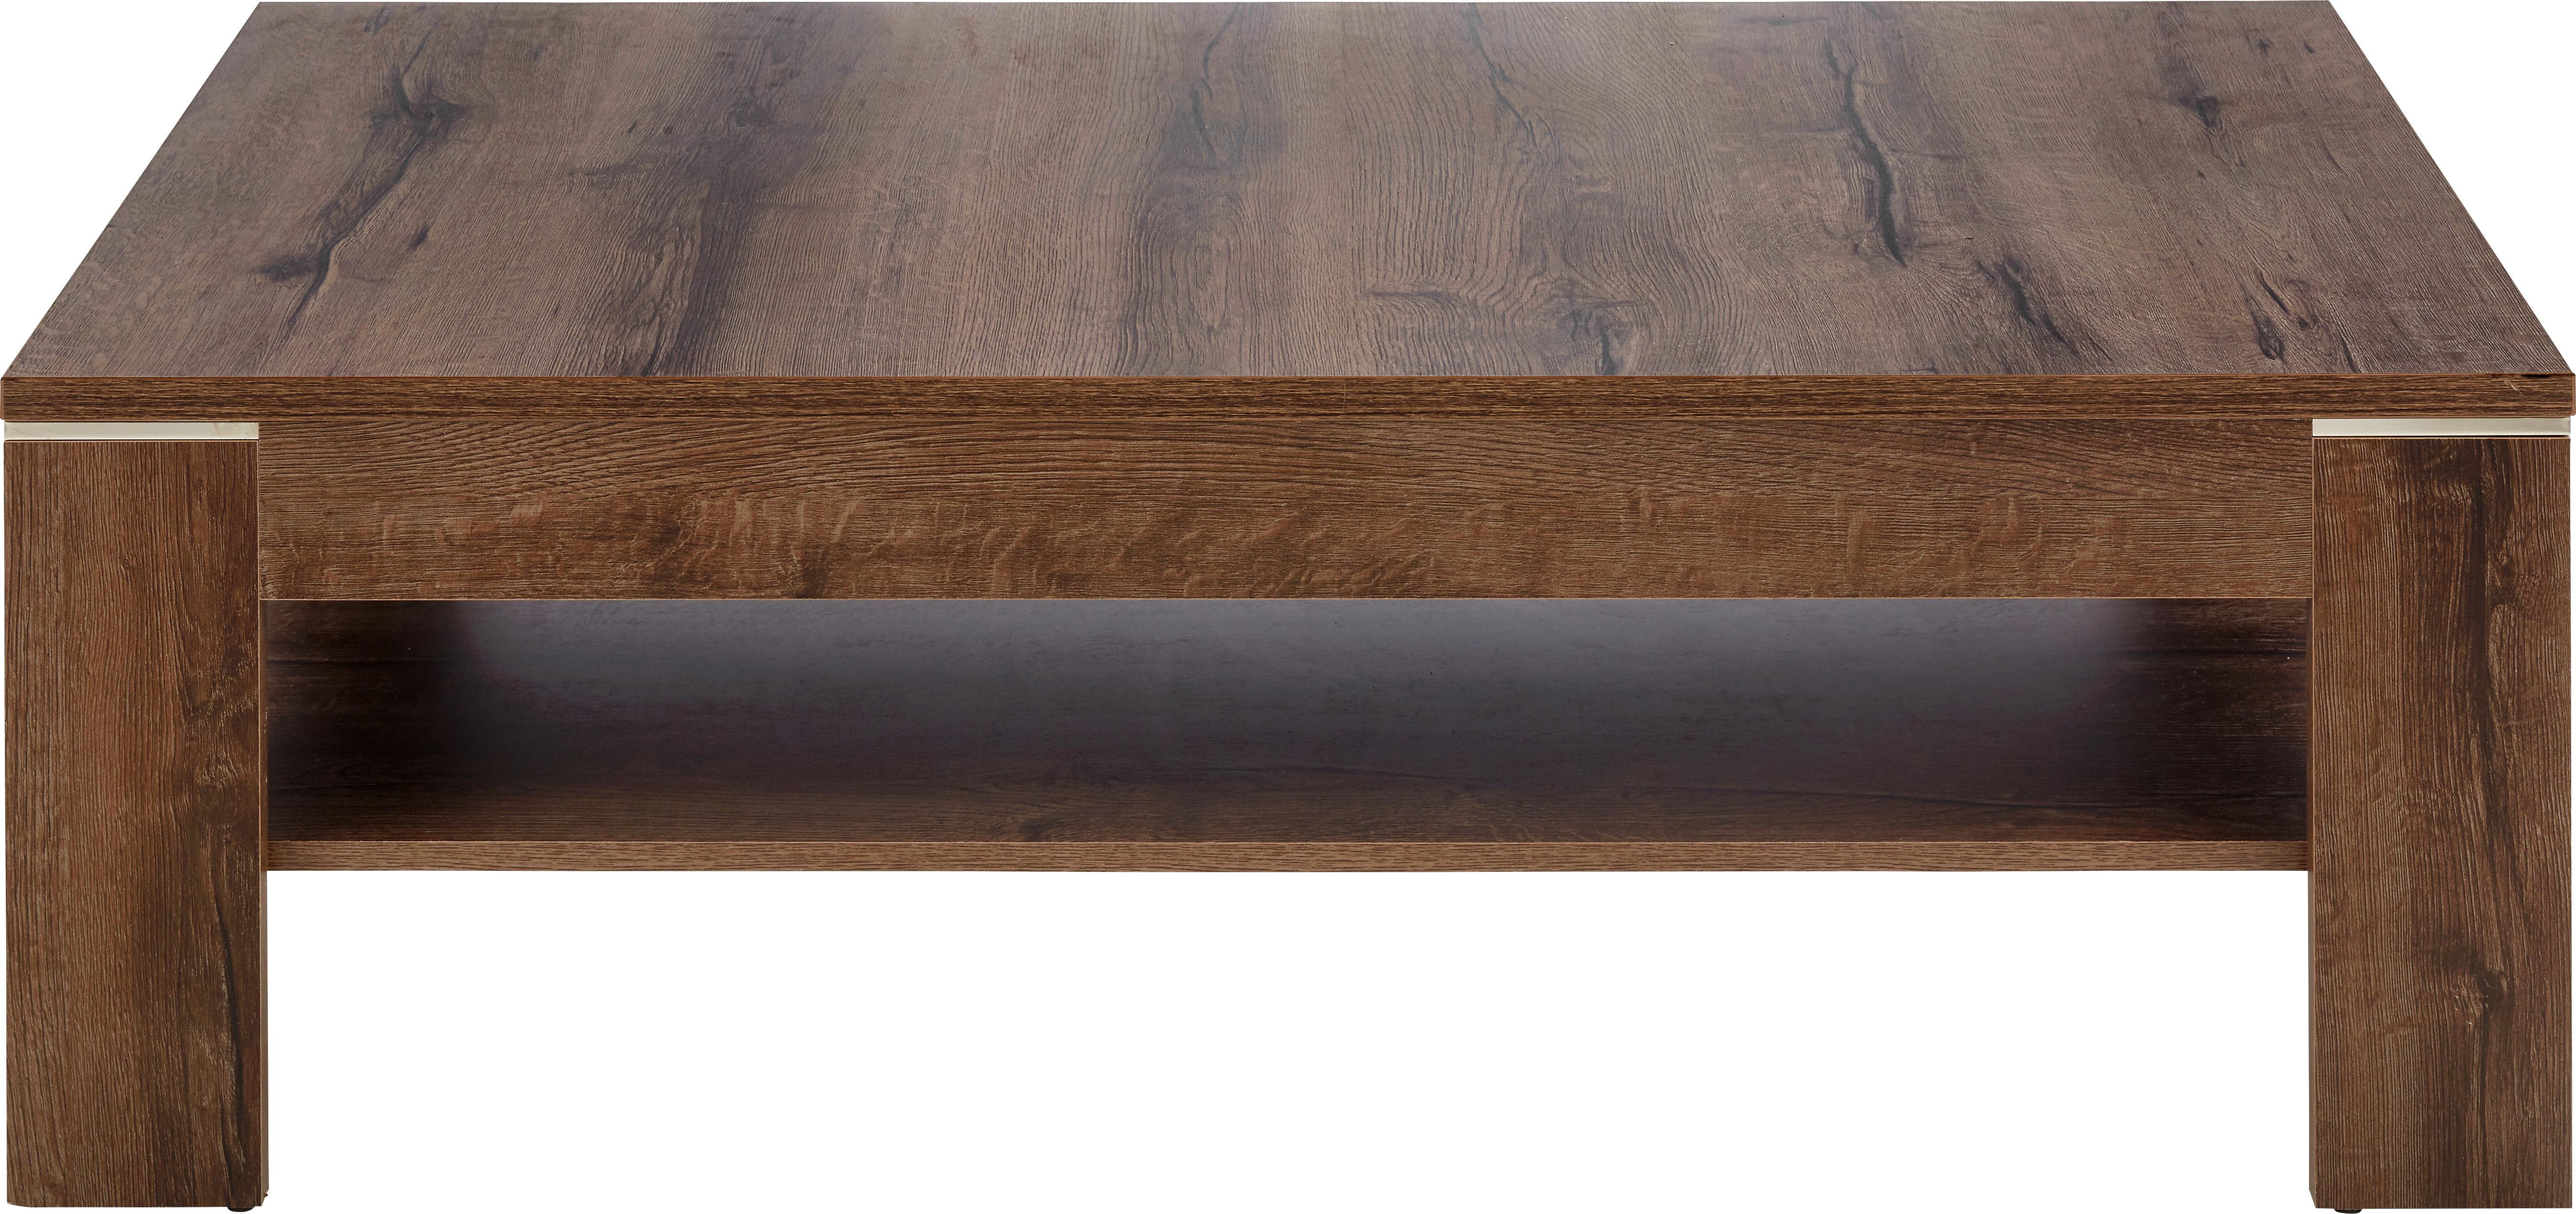 Konferenční Stolek Tokio/lacjum - barvy dubu/jílová barva, Moderní, kov/kompozitní dřevo (120/43/75cm) - Based